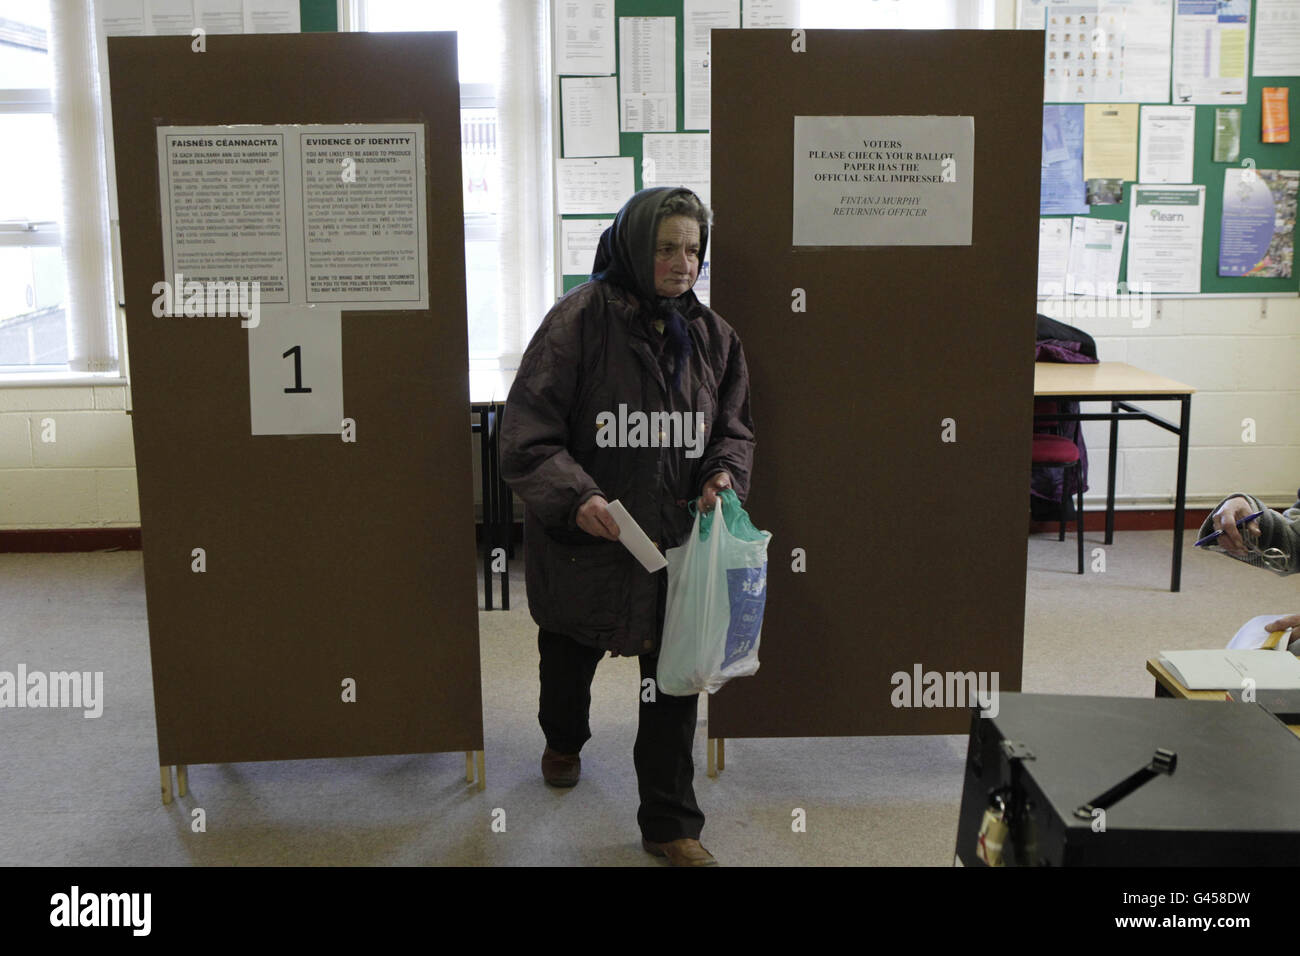 Eine Wählerin (Name unbekannt) stimmt bei den irischen Parlamentswahlen an der St. Patricks National School in Castlebar, Co. Mayo ab. Stockfoto